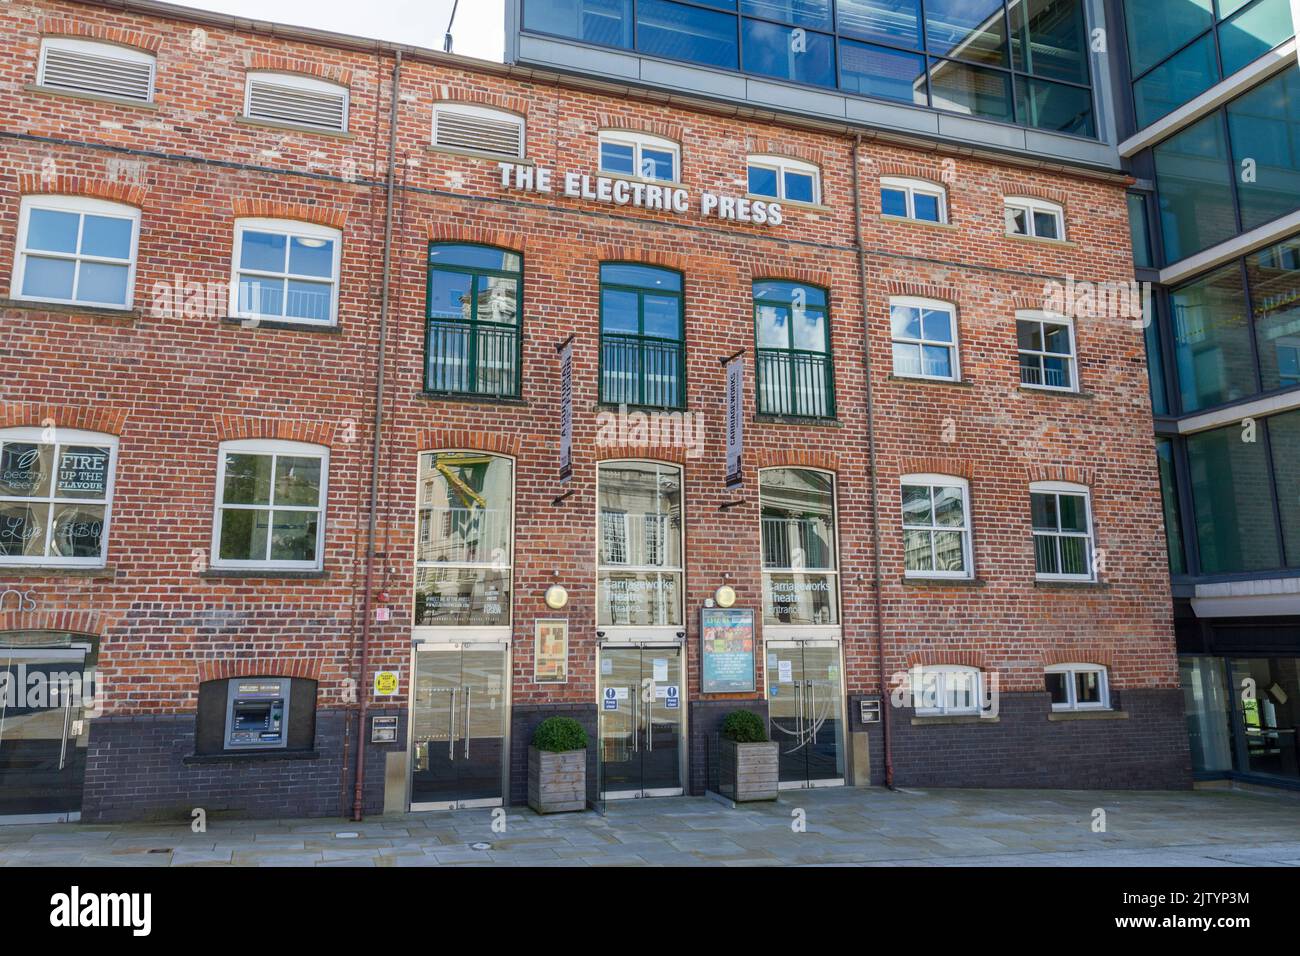 Le bâtiment emblématique de la presse électrique classé Grade 2 et l'entrée au théâtre Carriageworks à Leeds, West Yorkshire, Royaume-Uni. Banque D'Images